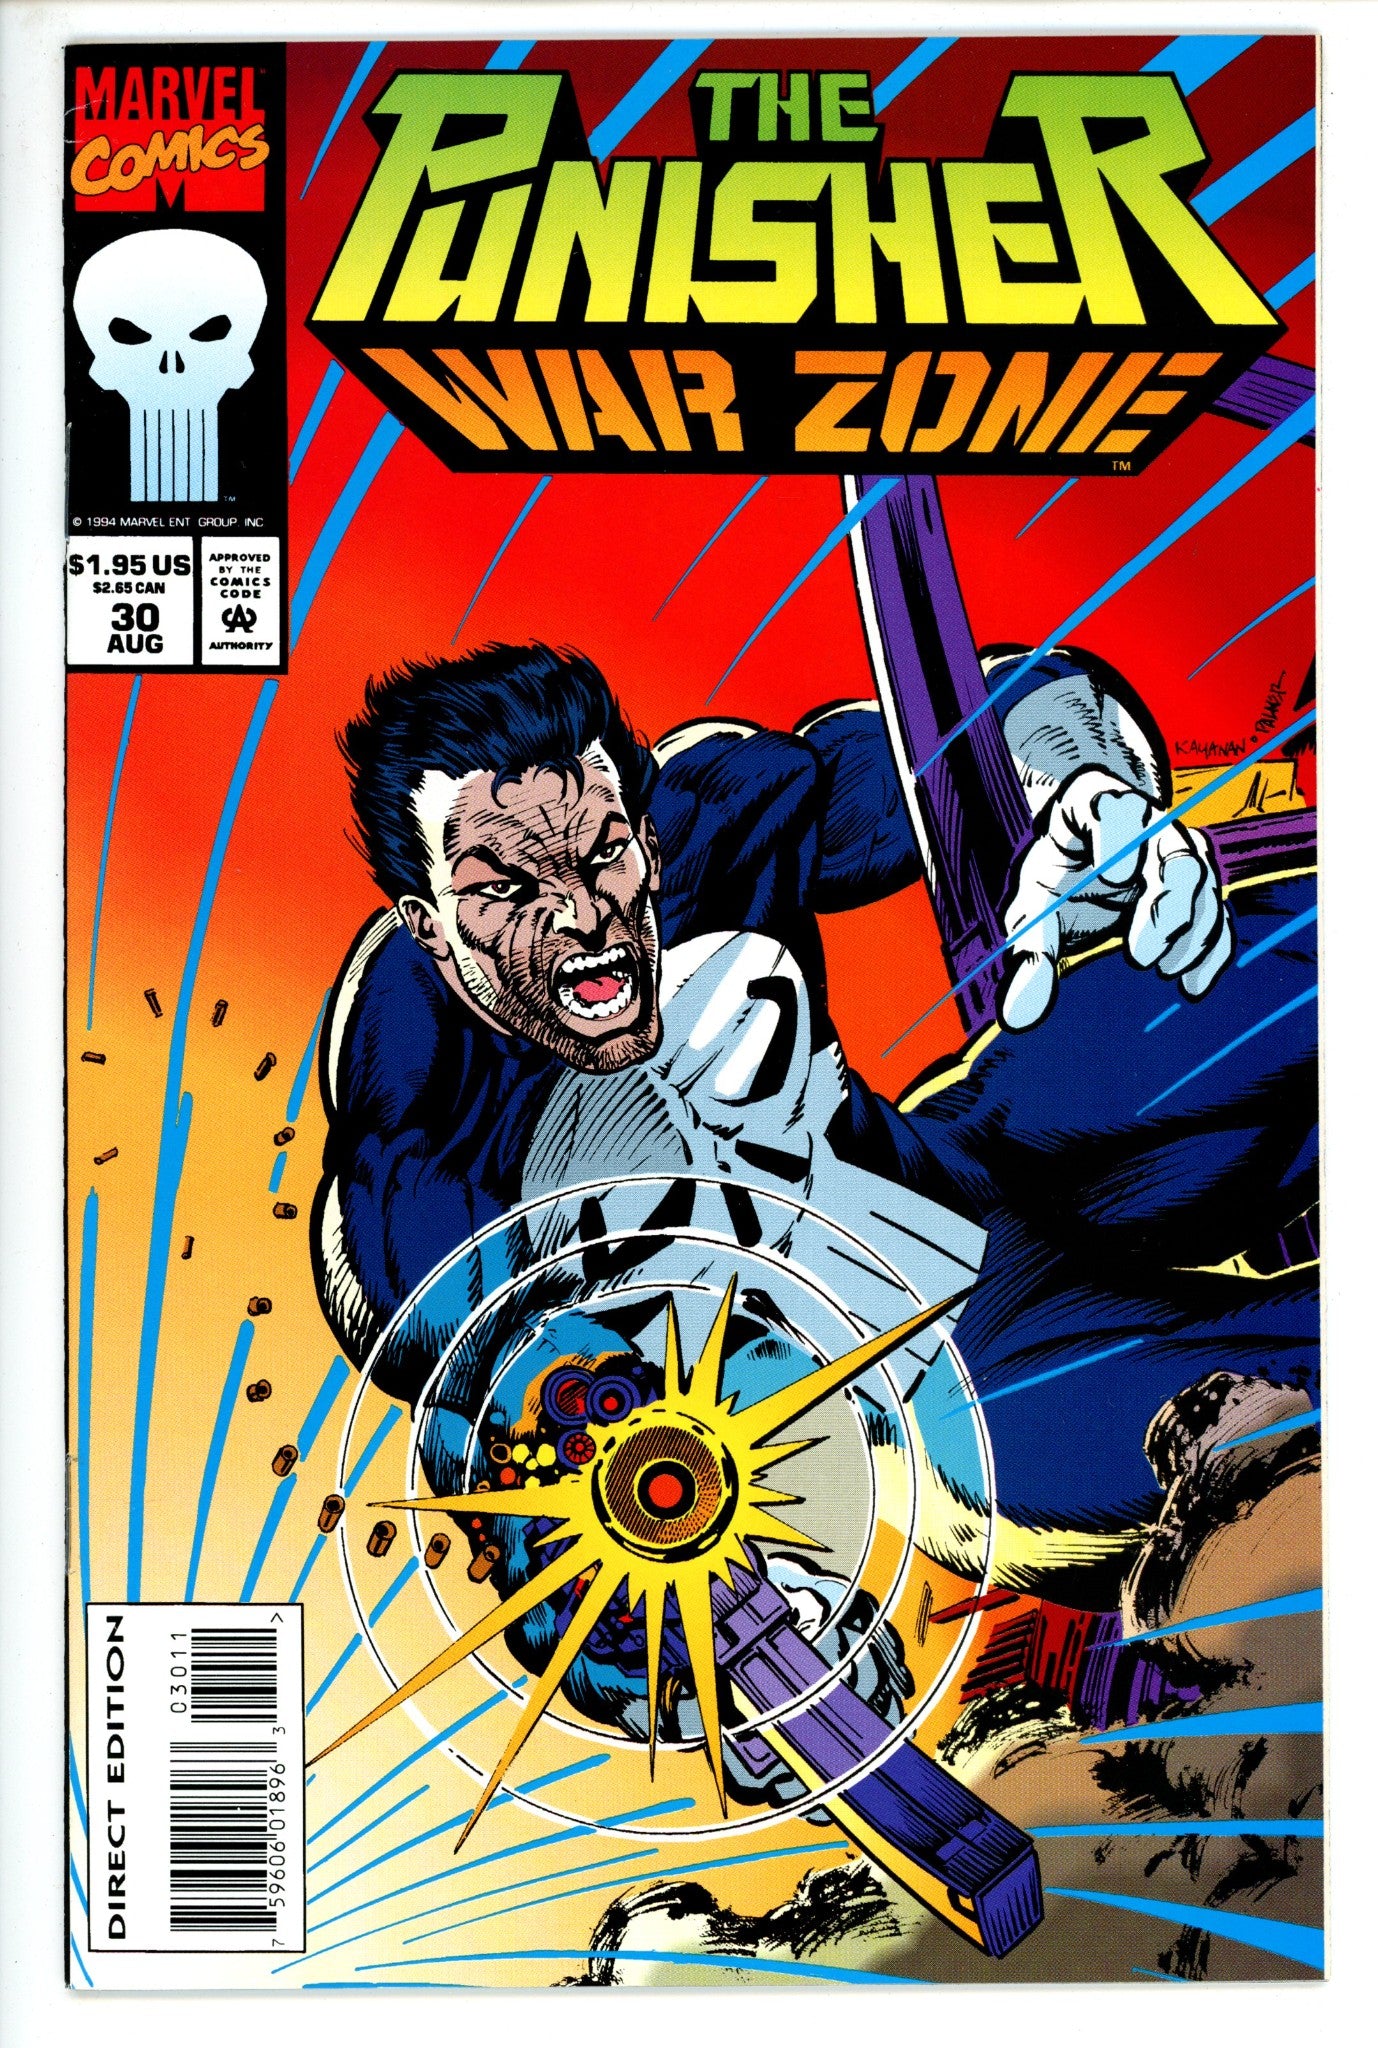 The Punisher: War Zone Vol 1 30